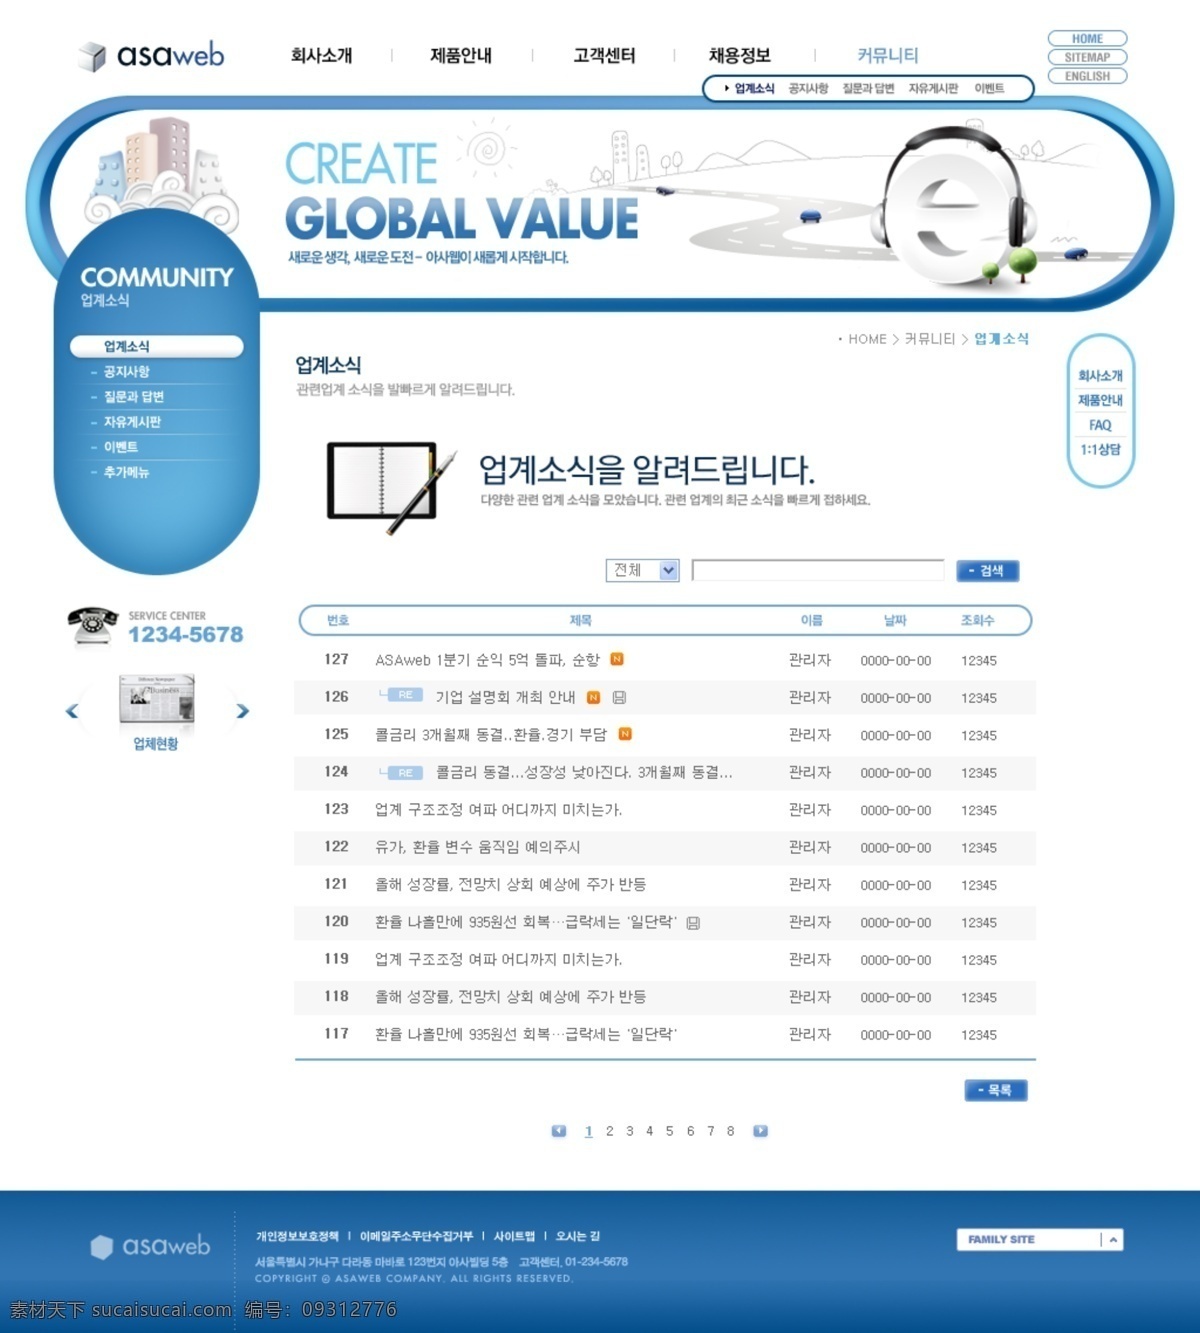 蓝色 模板 导航设计 公司网站 韩国网页 界面设计 科技发展 数码科技 网页界面 网页模板 网页设计 企业形像 网页素材